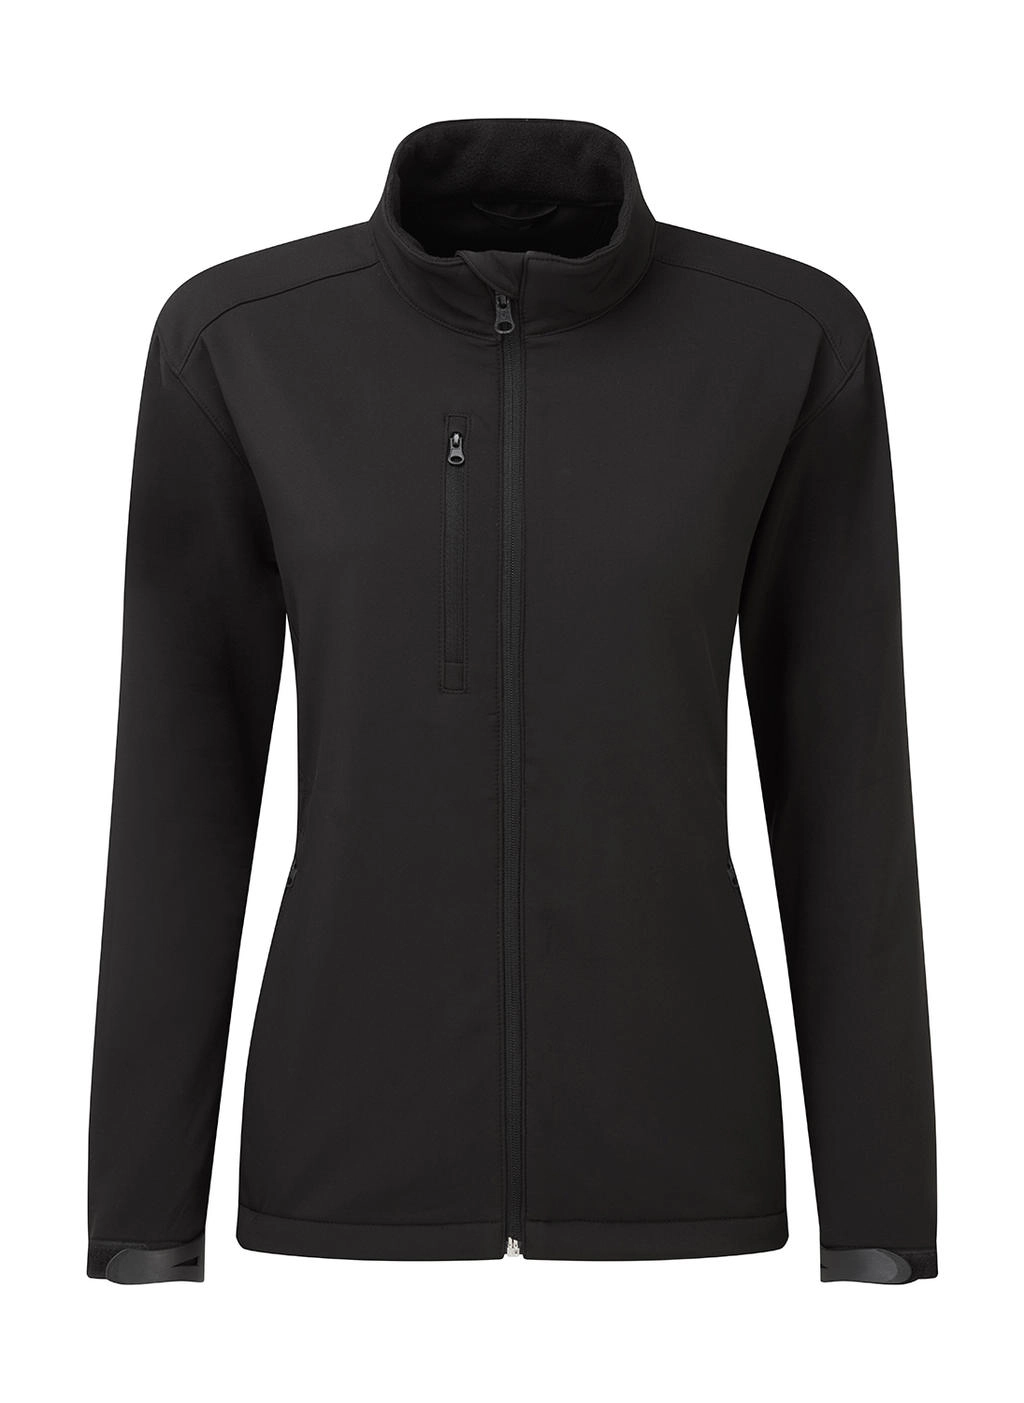 Signature Tagless Softshell Jacket Women zum Besticken und Bedrucken in der Farbe Black mit Ihren Logo, Schriftzug oder Motiv.